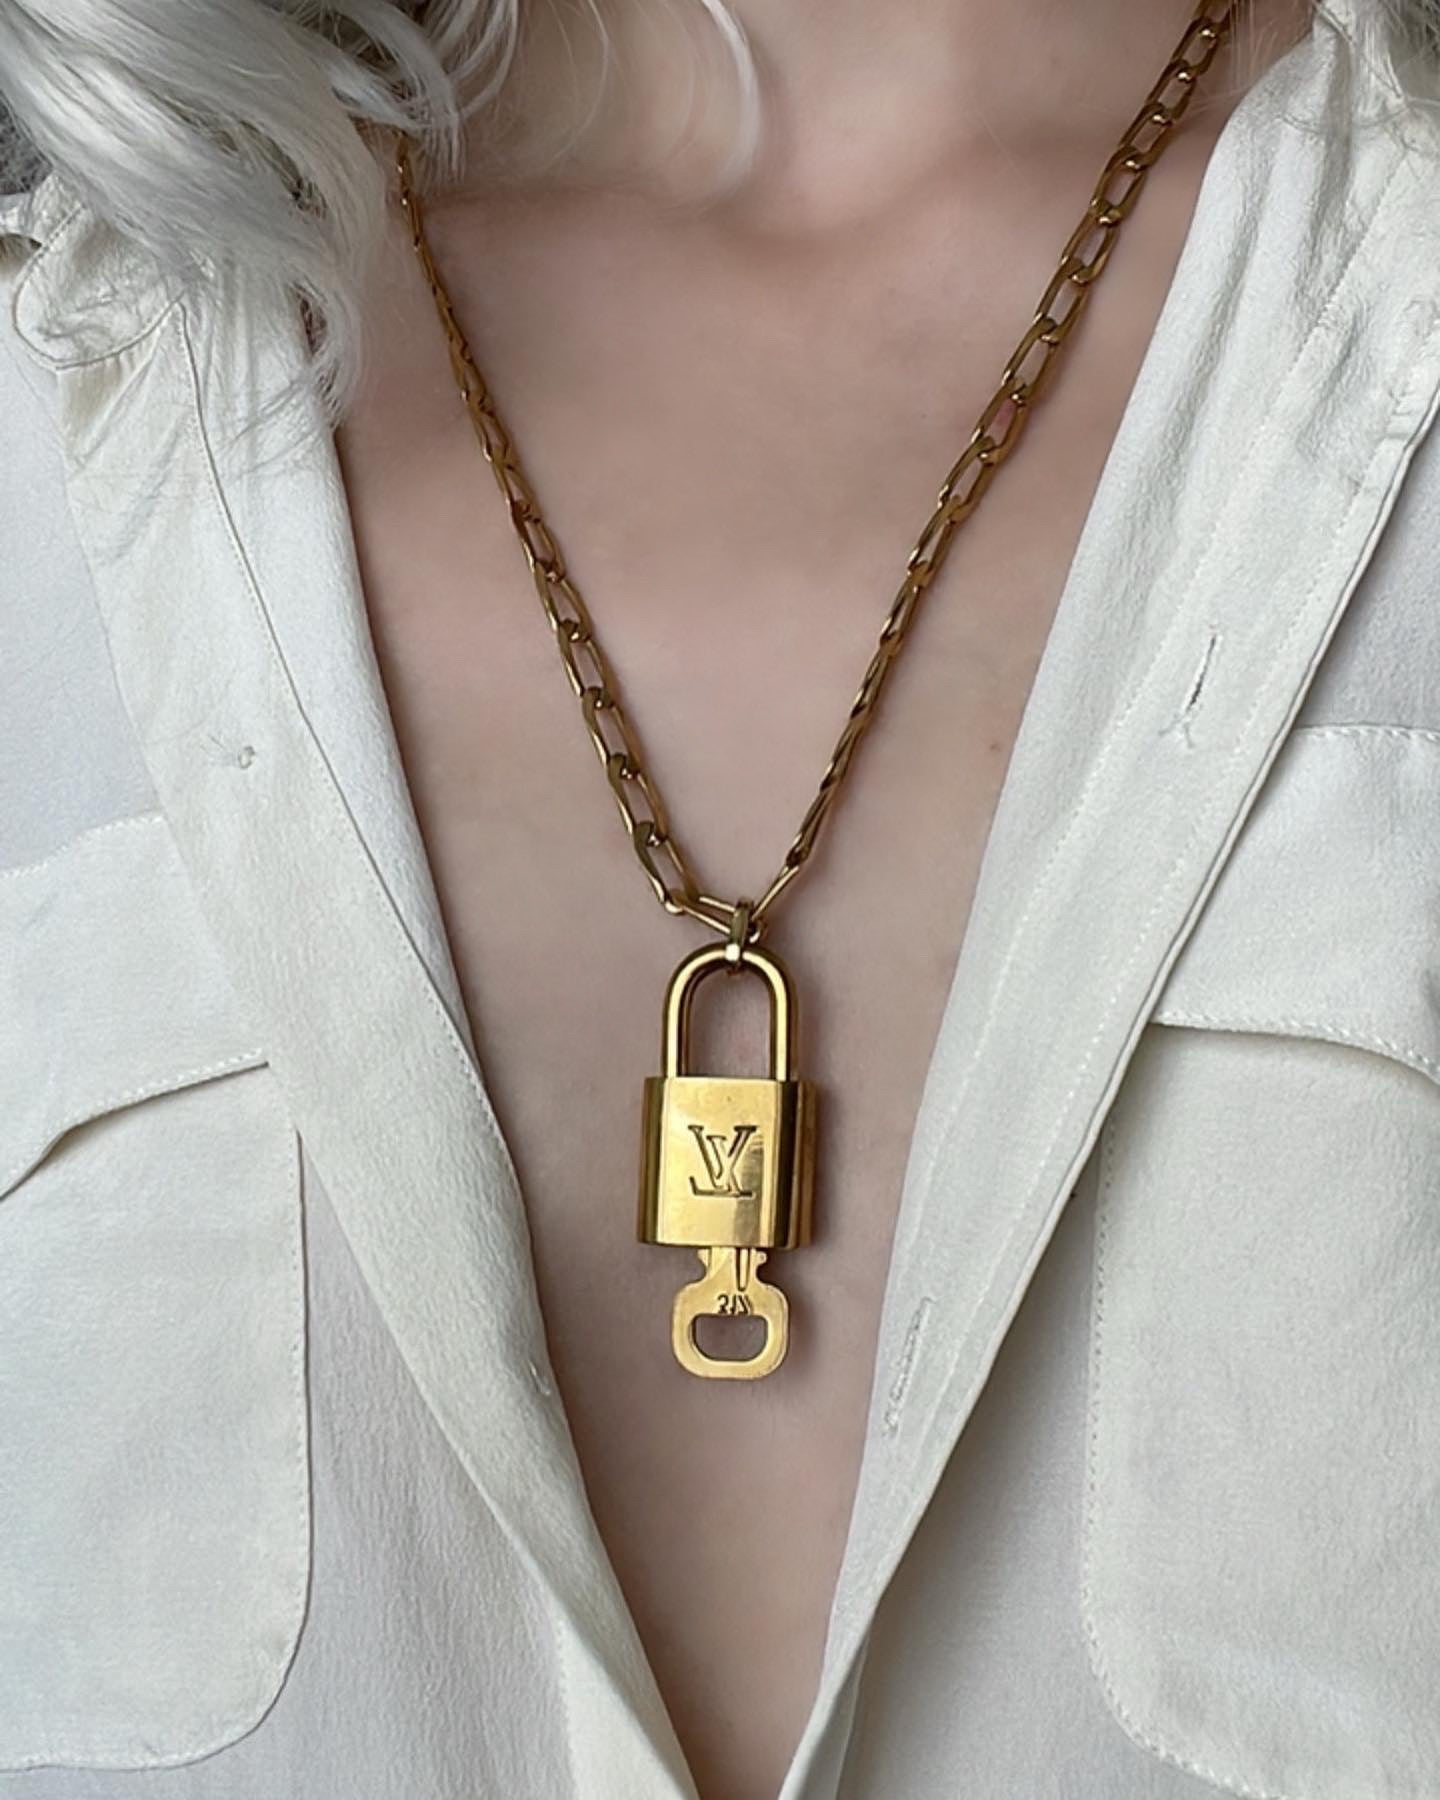 Louis Vuitton Set Lock Cuban Chain Necklace with Key Bracelet For Him  eBay